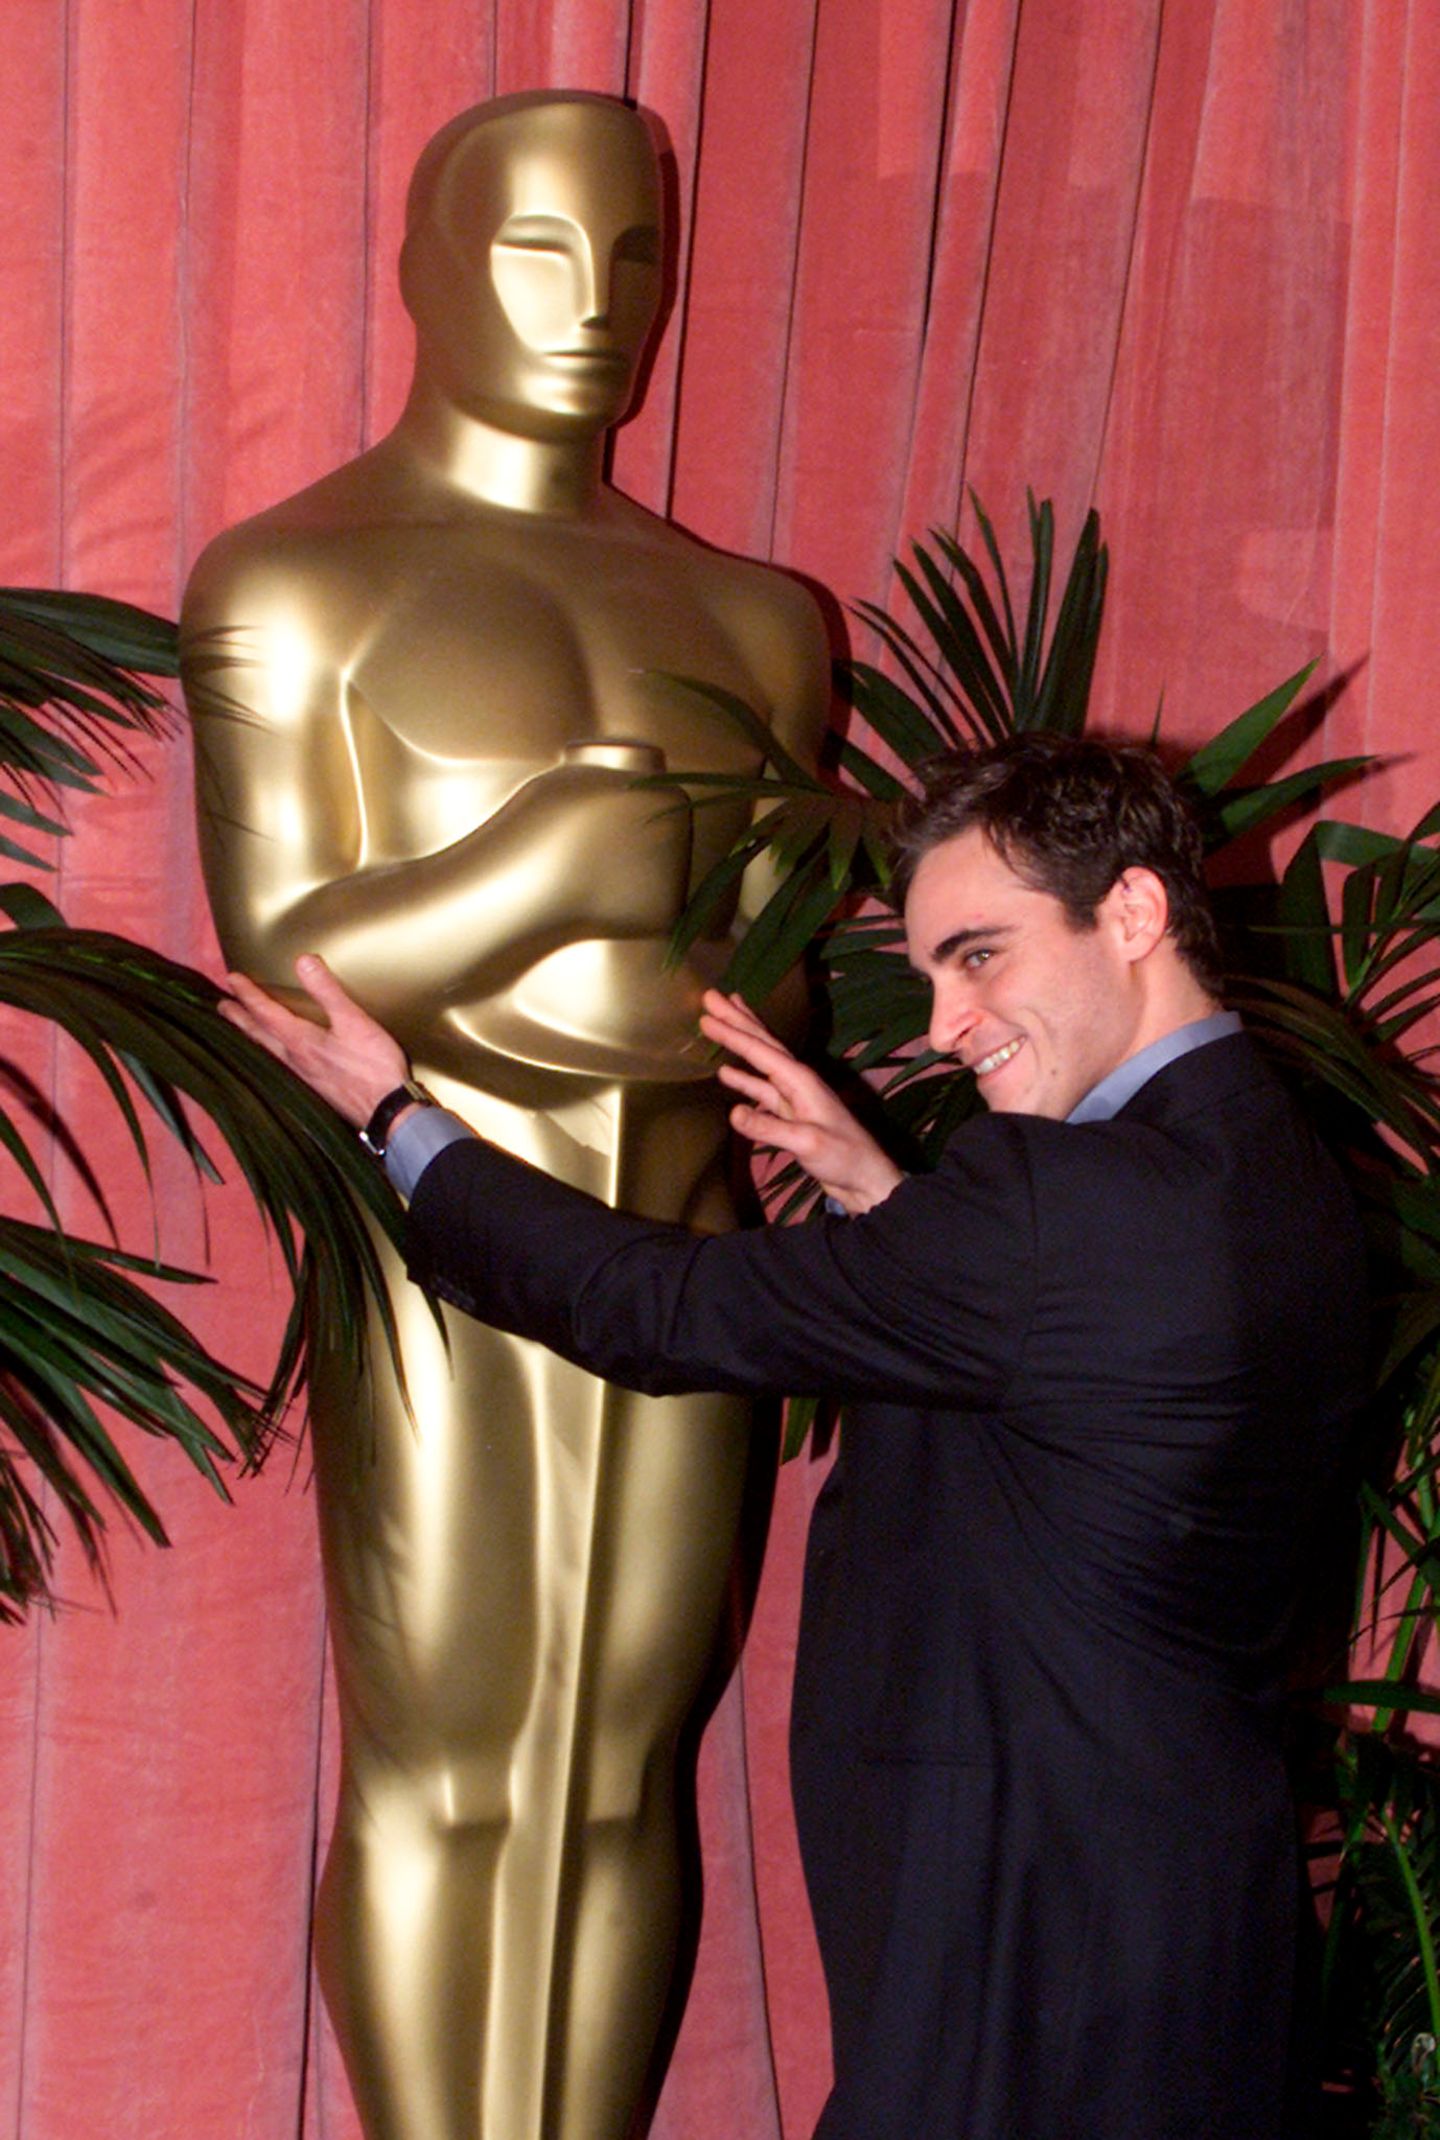 Joaquin Phoenix - 3 Nominierungen  Mehrfach zum Greifen nah, aber für ihn gilt bisher: "Nur Gucken, nicht anfassen".